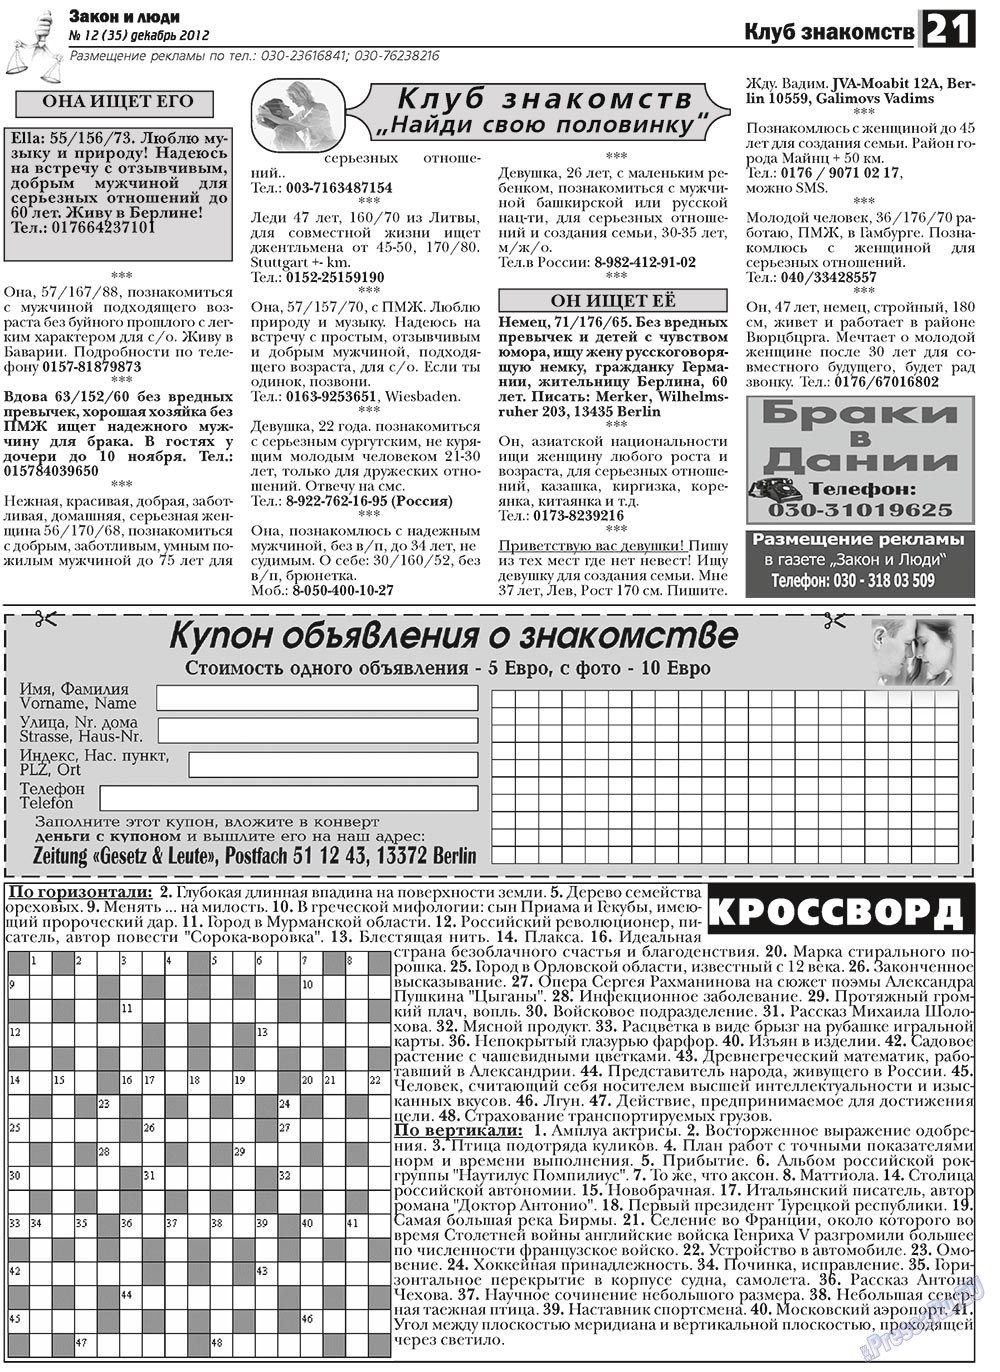 Закон и люди, газета. 2012 №12 стр.21